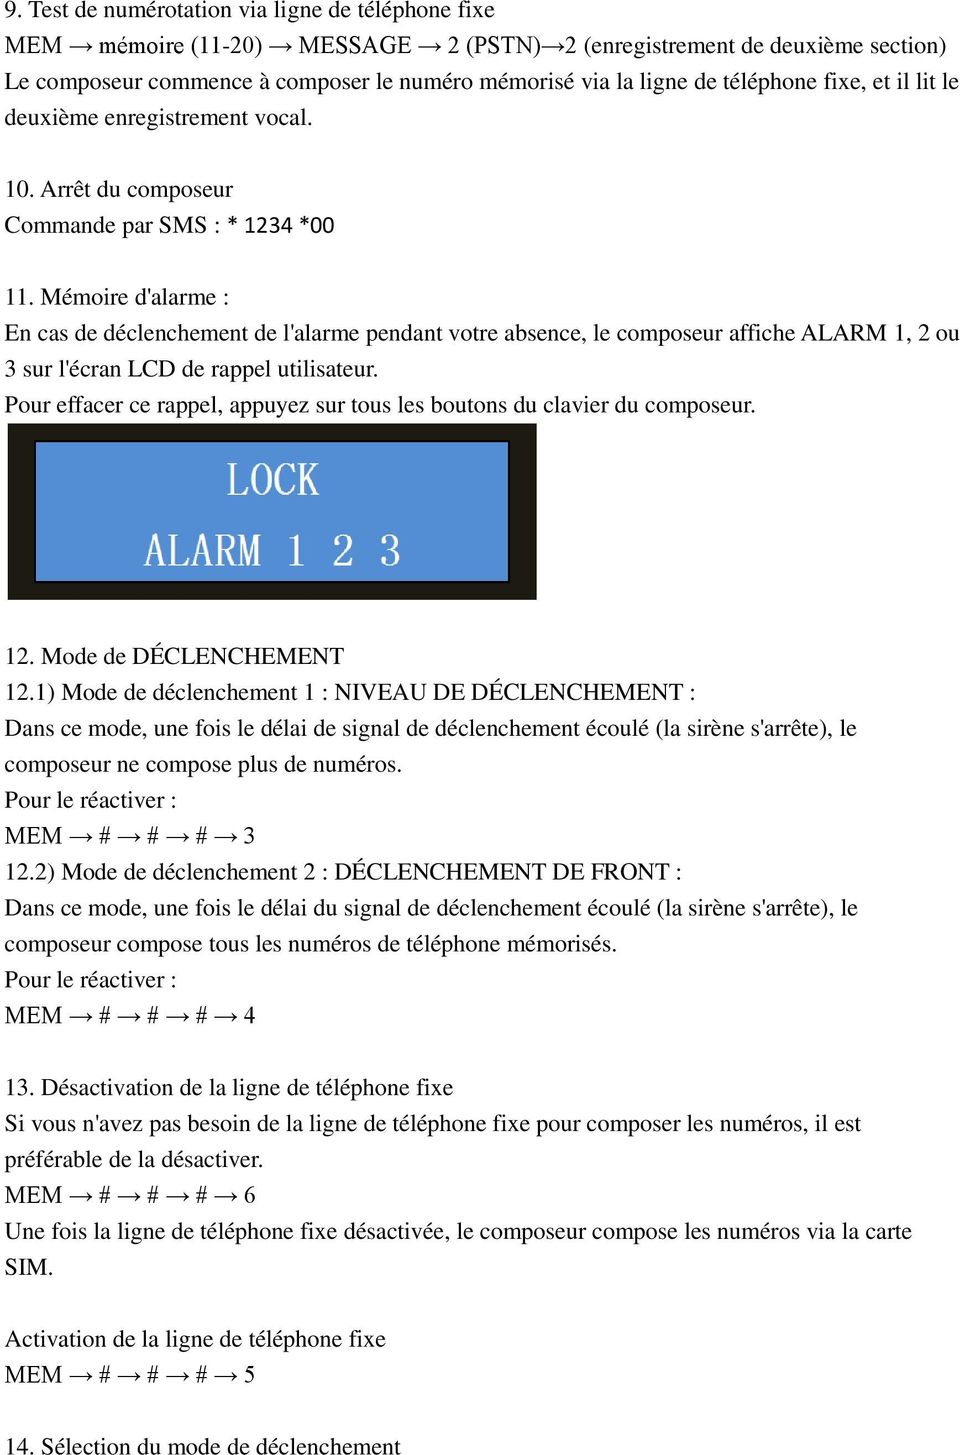 Mémoire d'alarme : En cas de déclenchement de l'alarme pendant votre absence, le composeur affiche ALARM 1, 2 ou 3 sur l'écran LCD de rappel utilisateur.